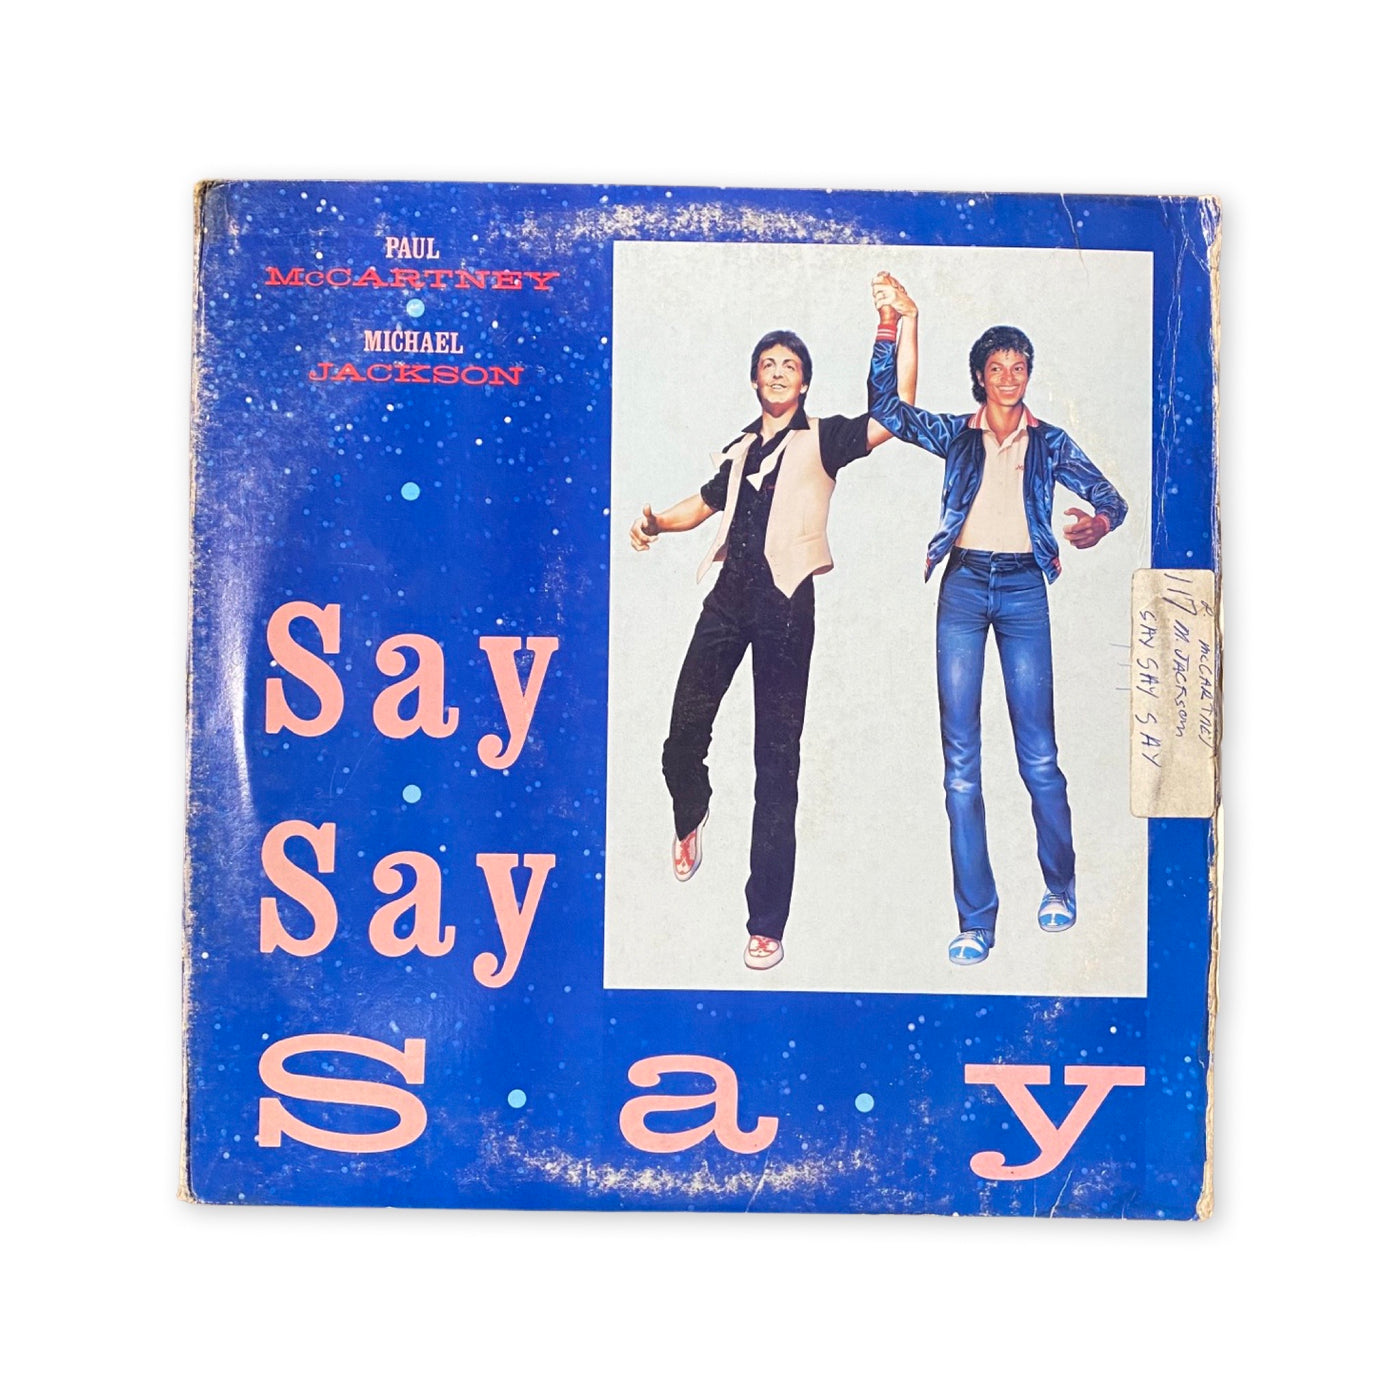 Paul McCartney And Michael Jackson - Say Say Say